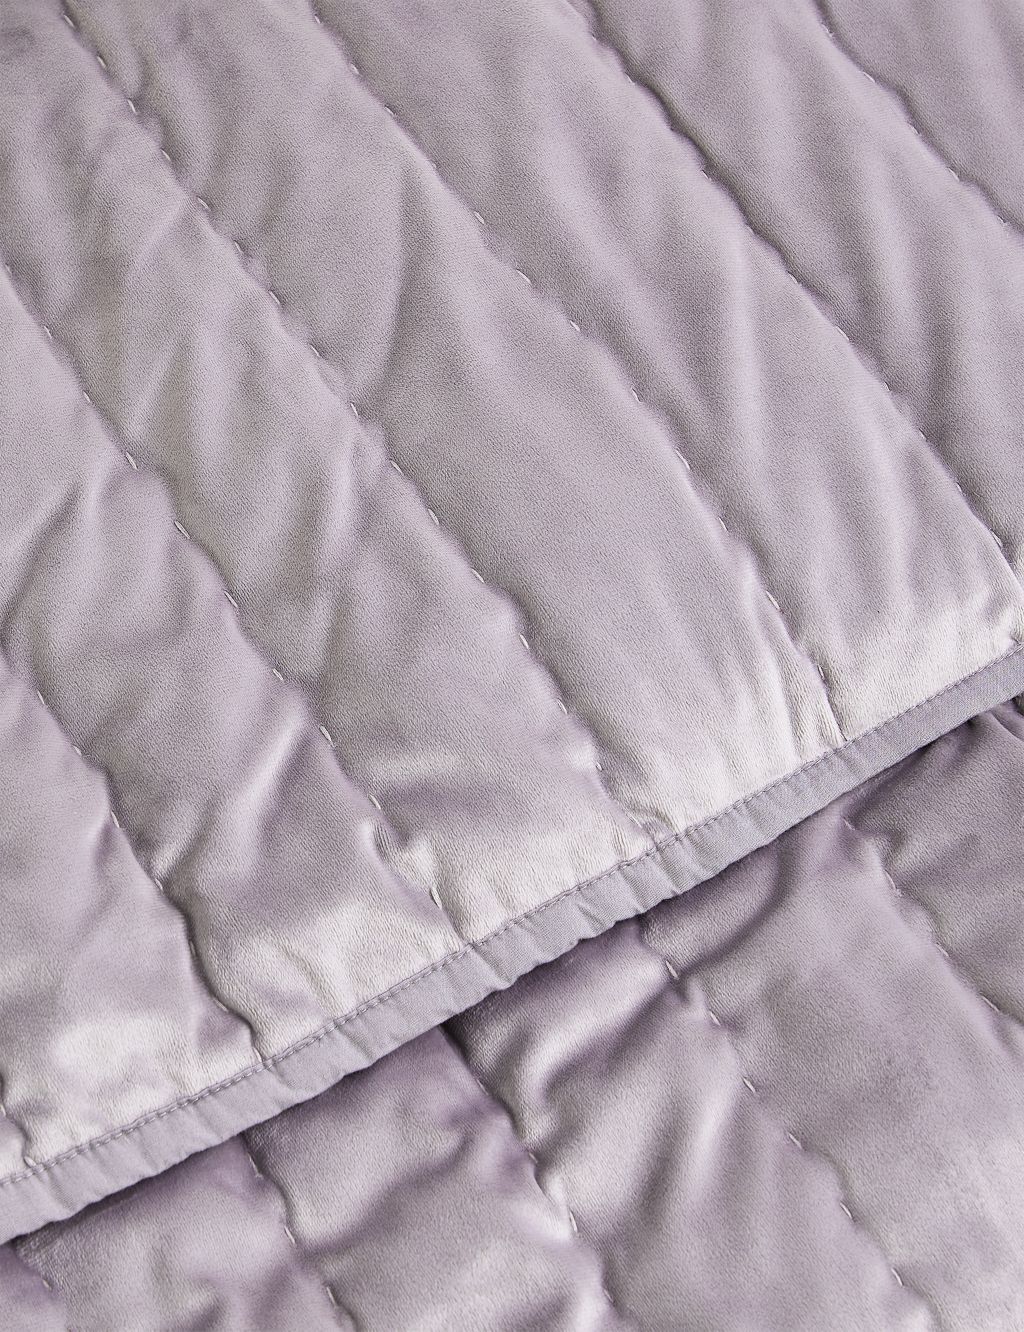 Velvet Quilted Bedspread image 4